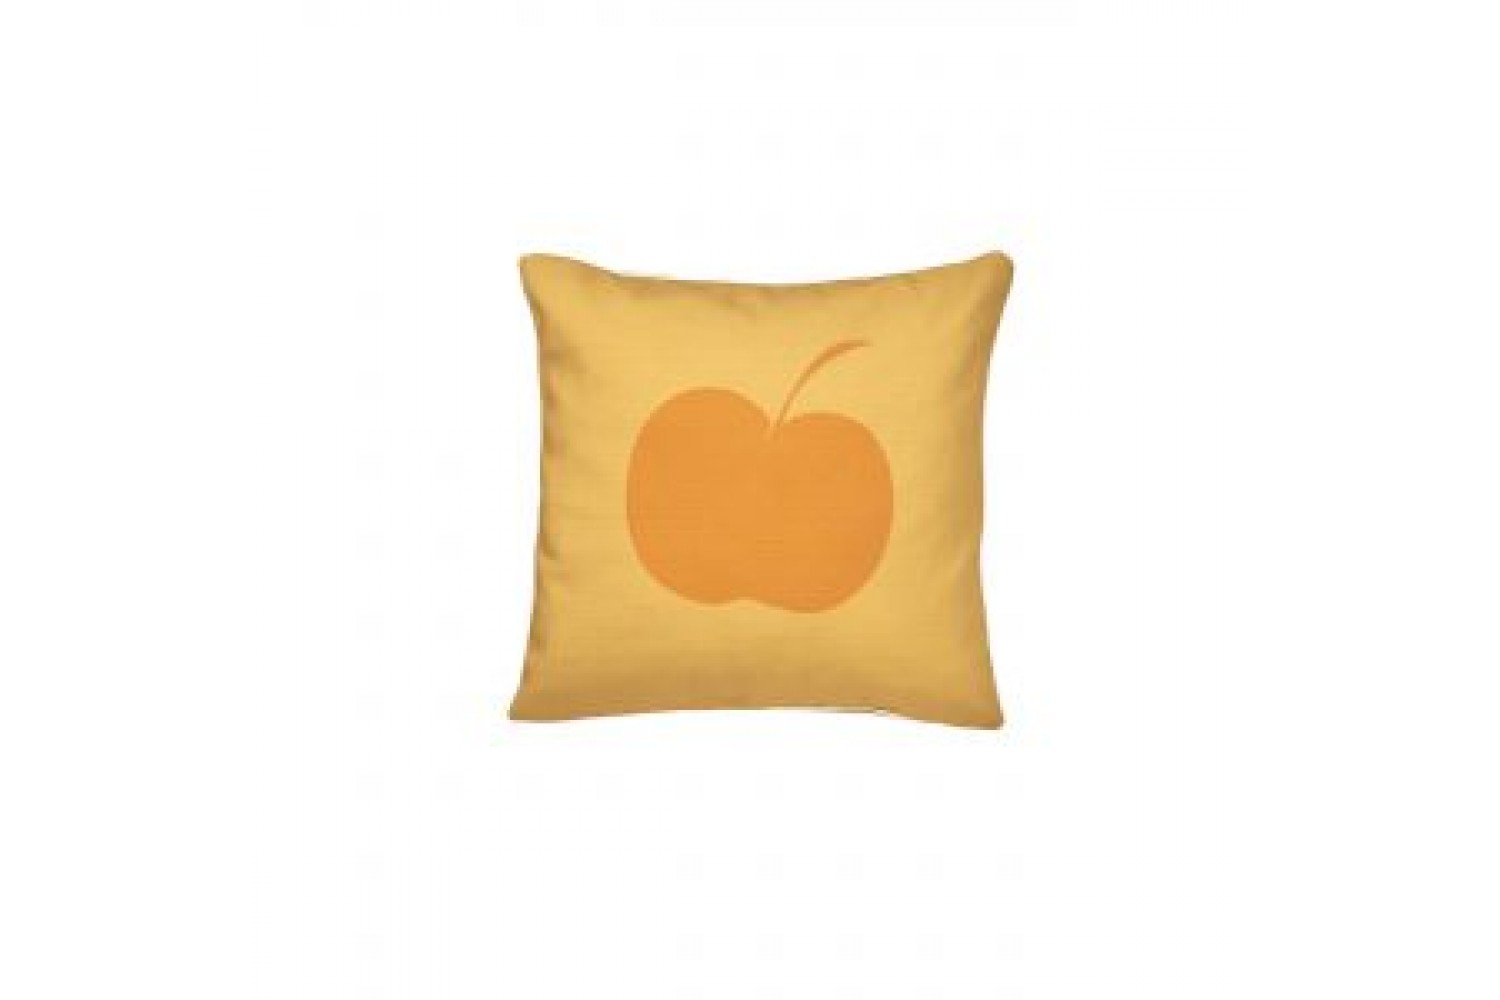 Подушка Apple Bee Logo 45 x 45 Orange